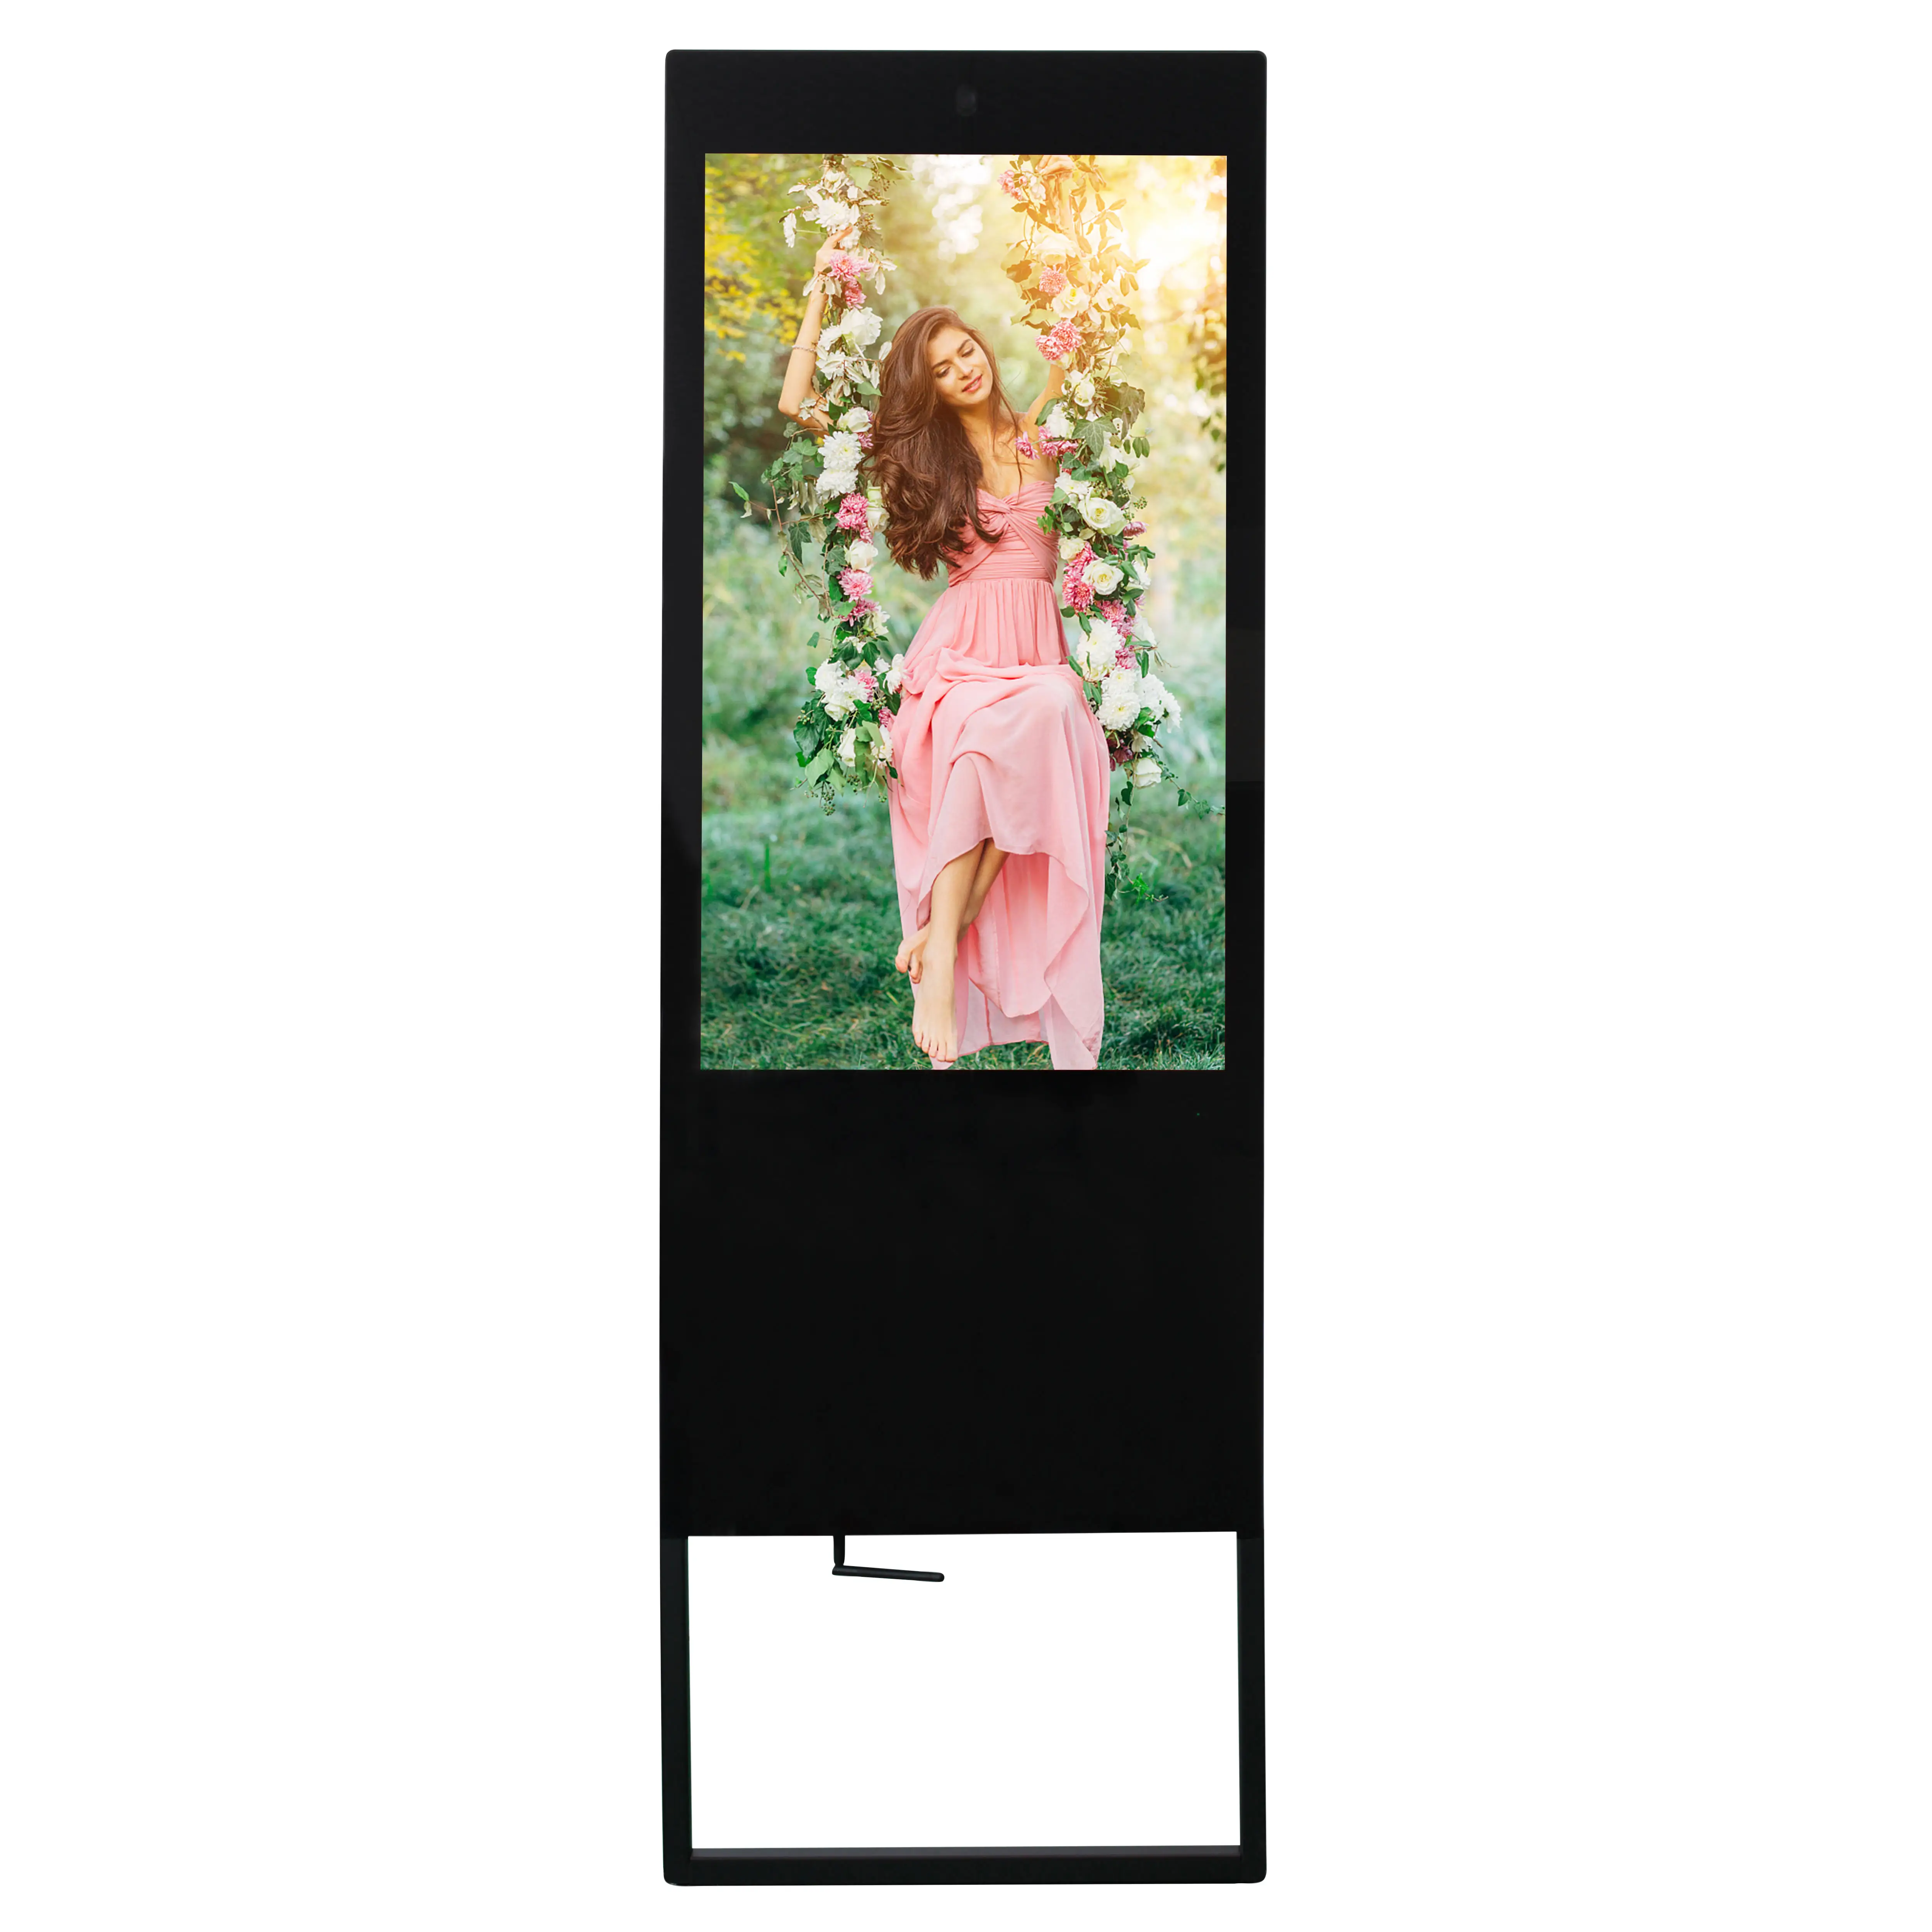 A-sign — affichage numérique pour intérieure et verticale, équipement de jeu portable de 10, 32 ou 43 pouces, avec module LCD TFT